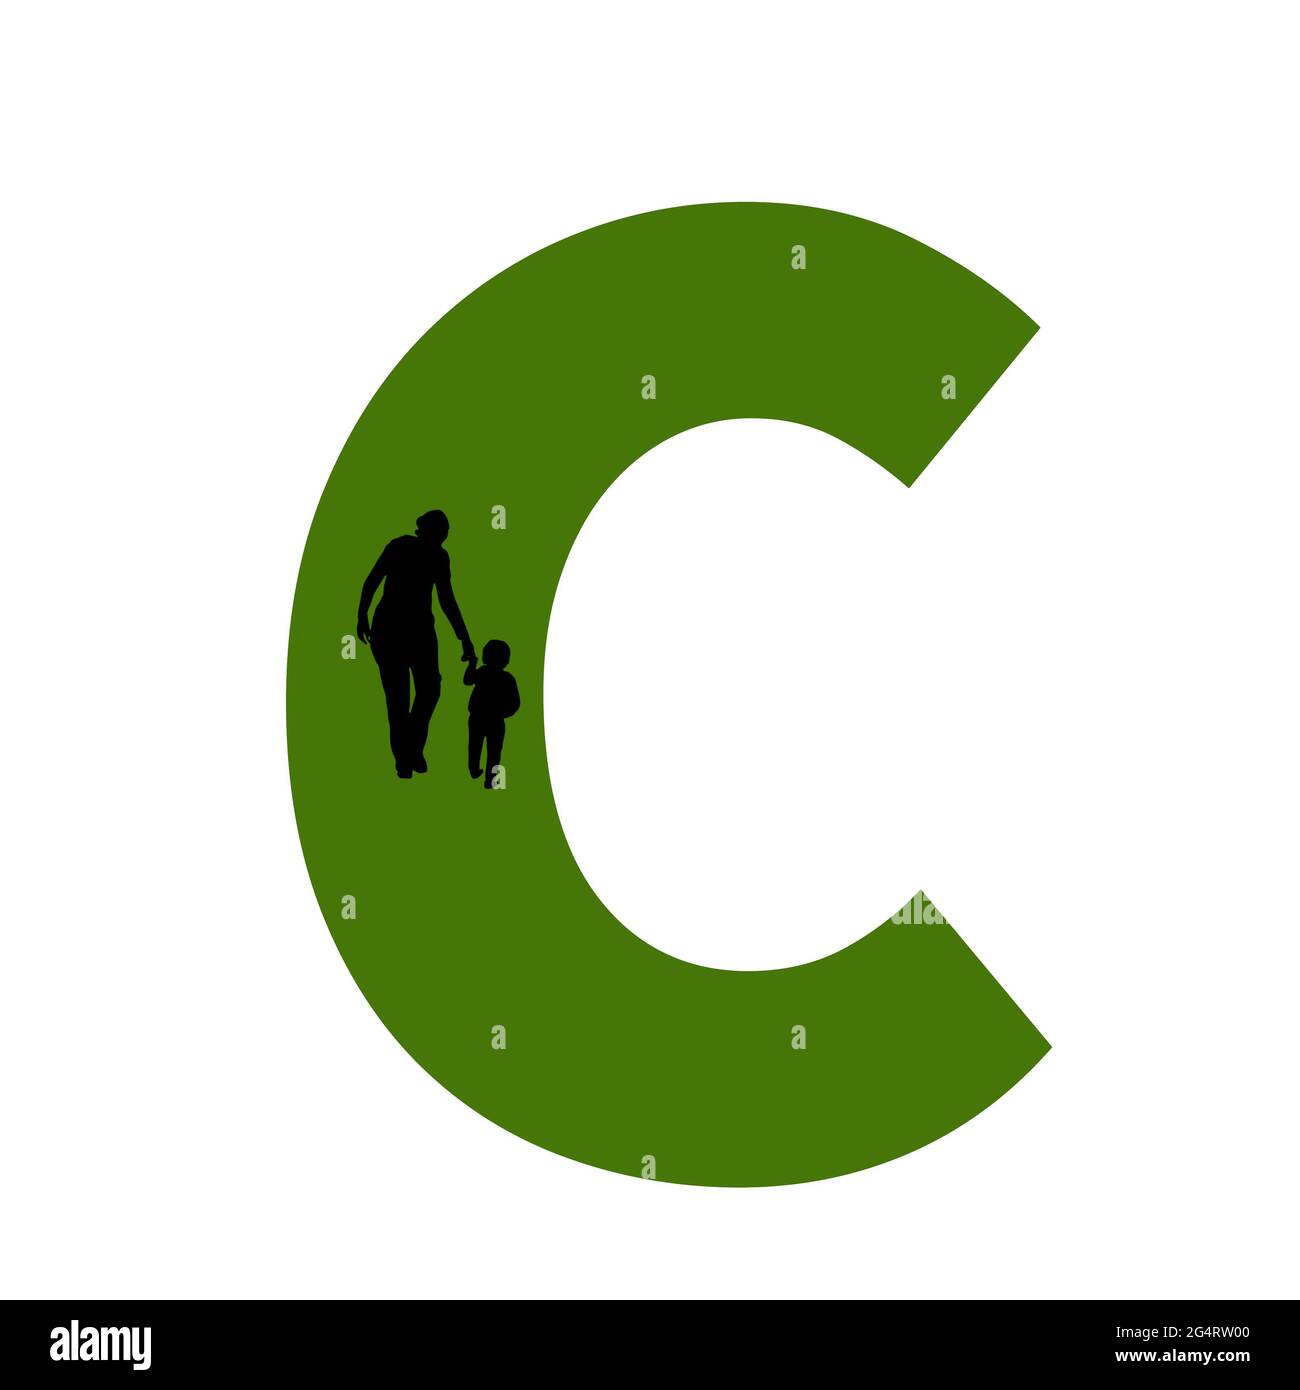 Lettre C de l'alphabet avec silhouette d'une mère et d'un enfant marchant, en vert et noir Banque D'Images